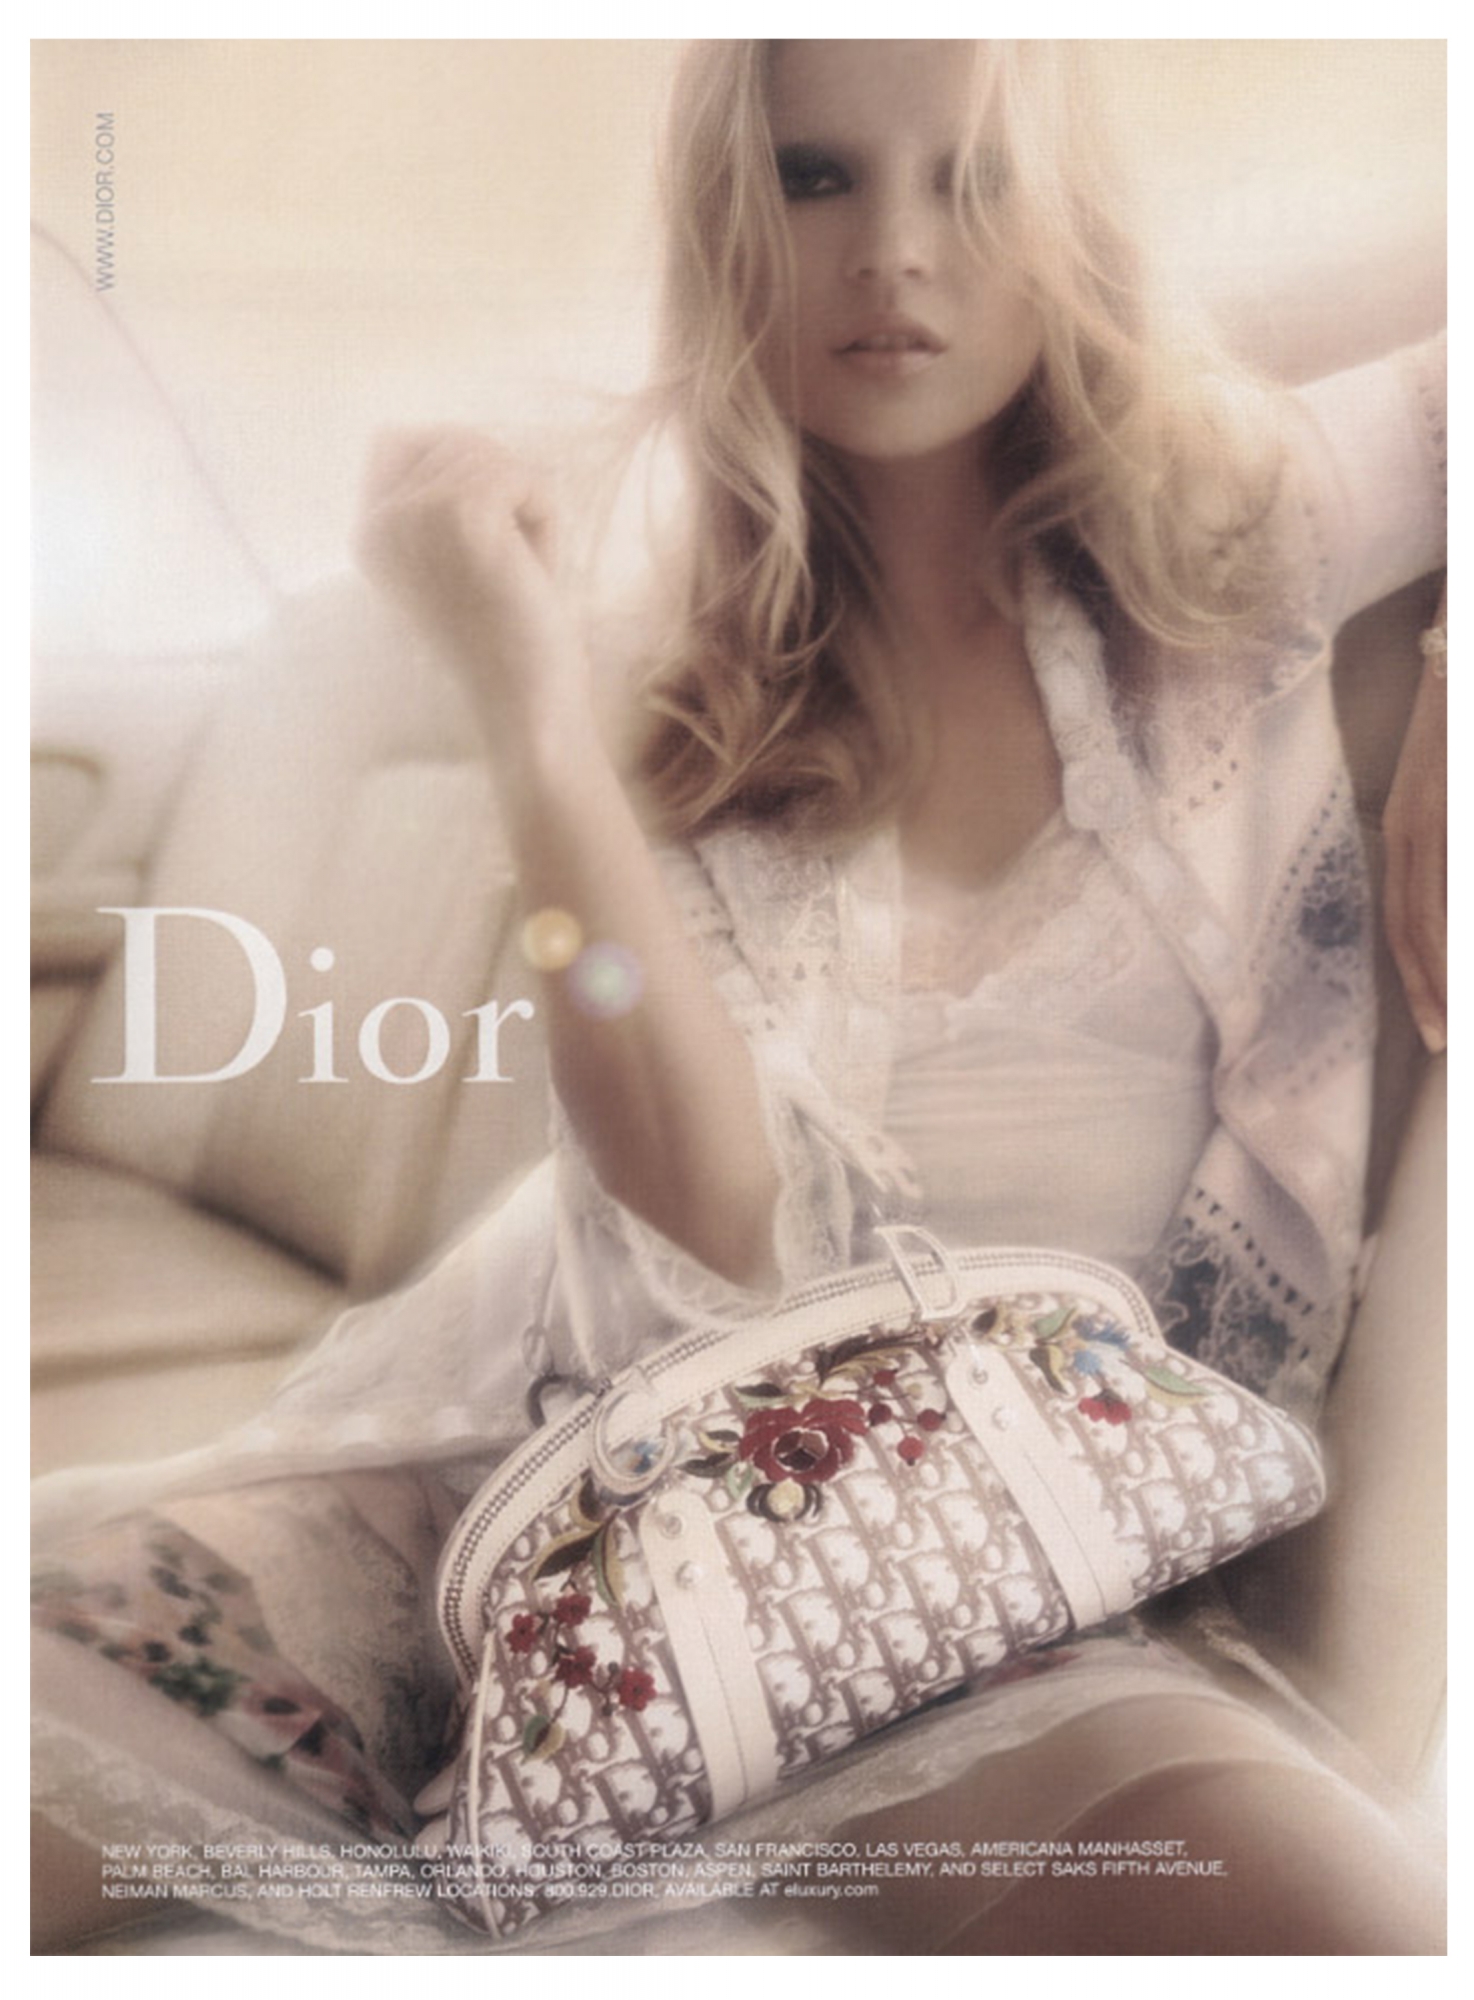 Dior, Search Results